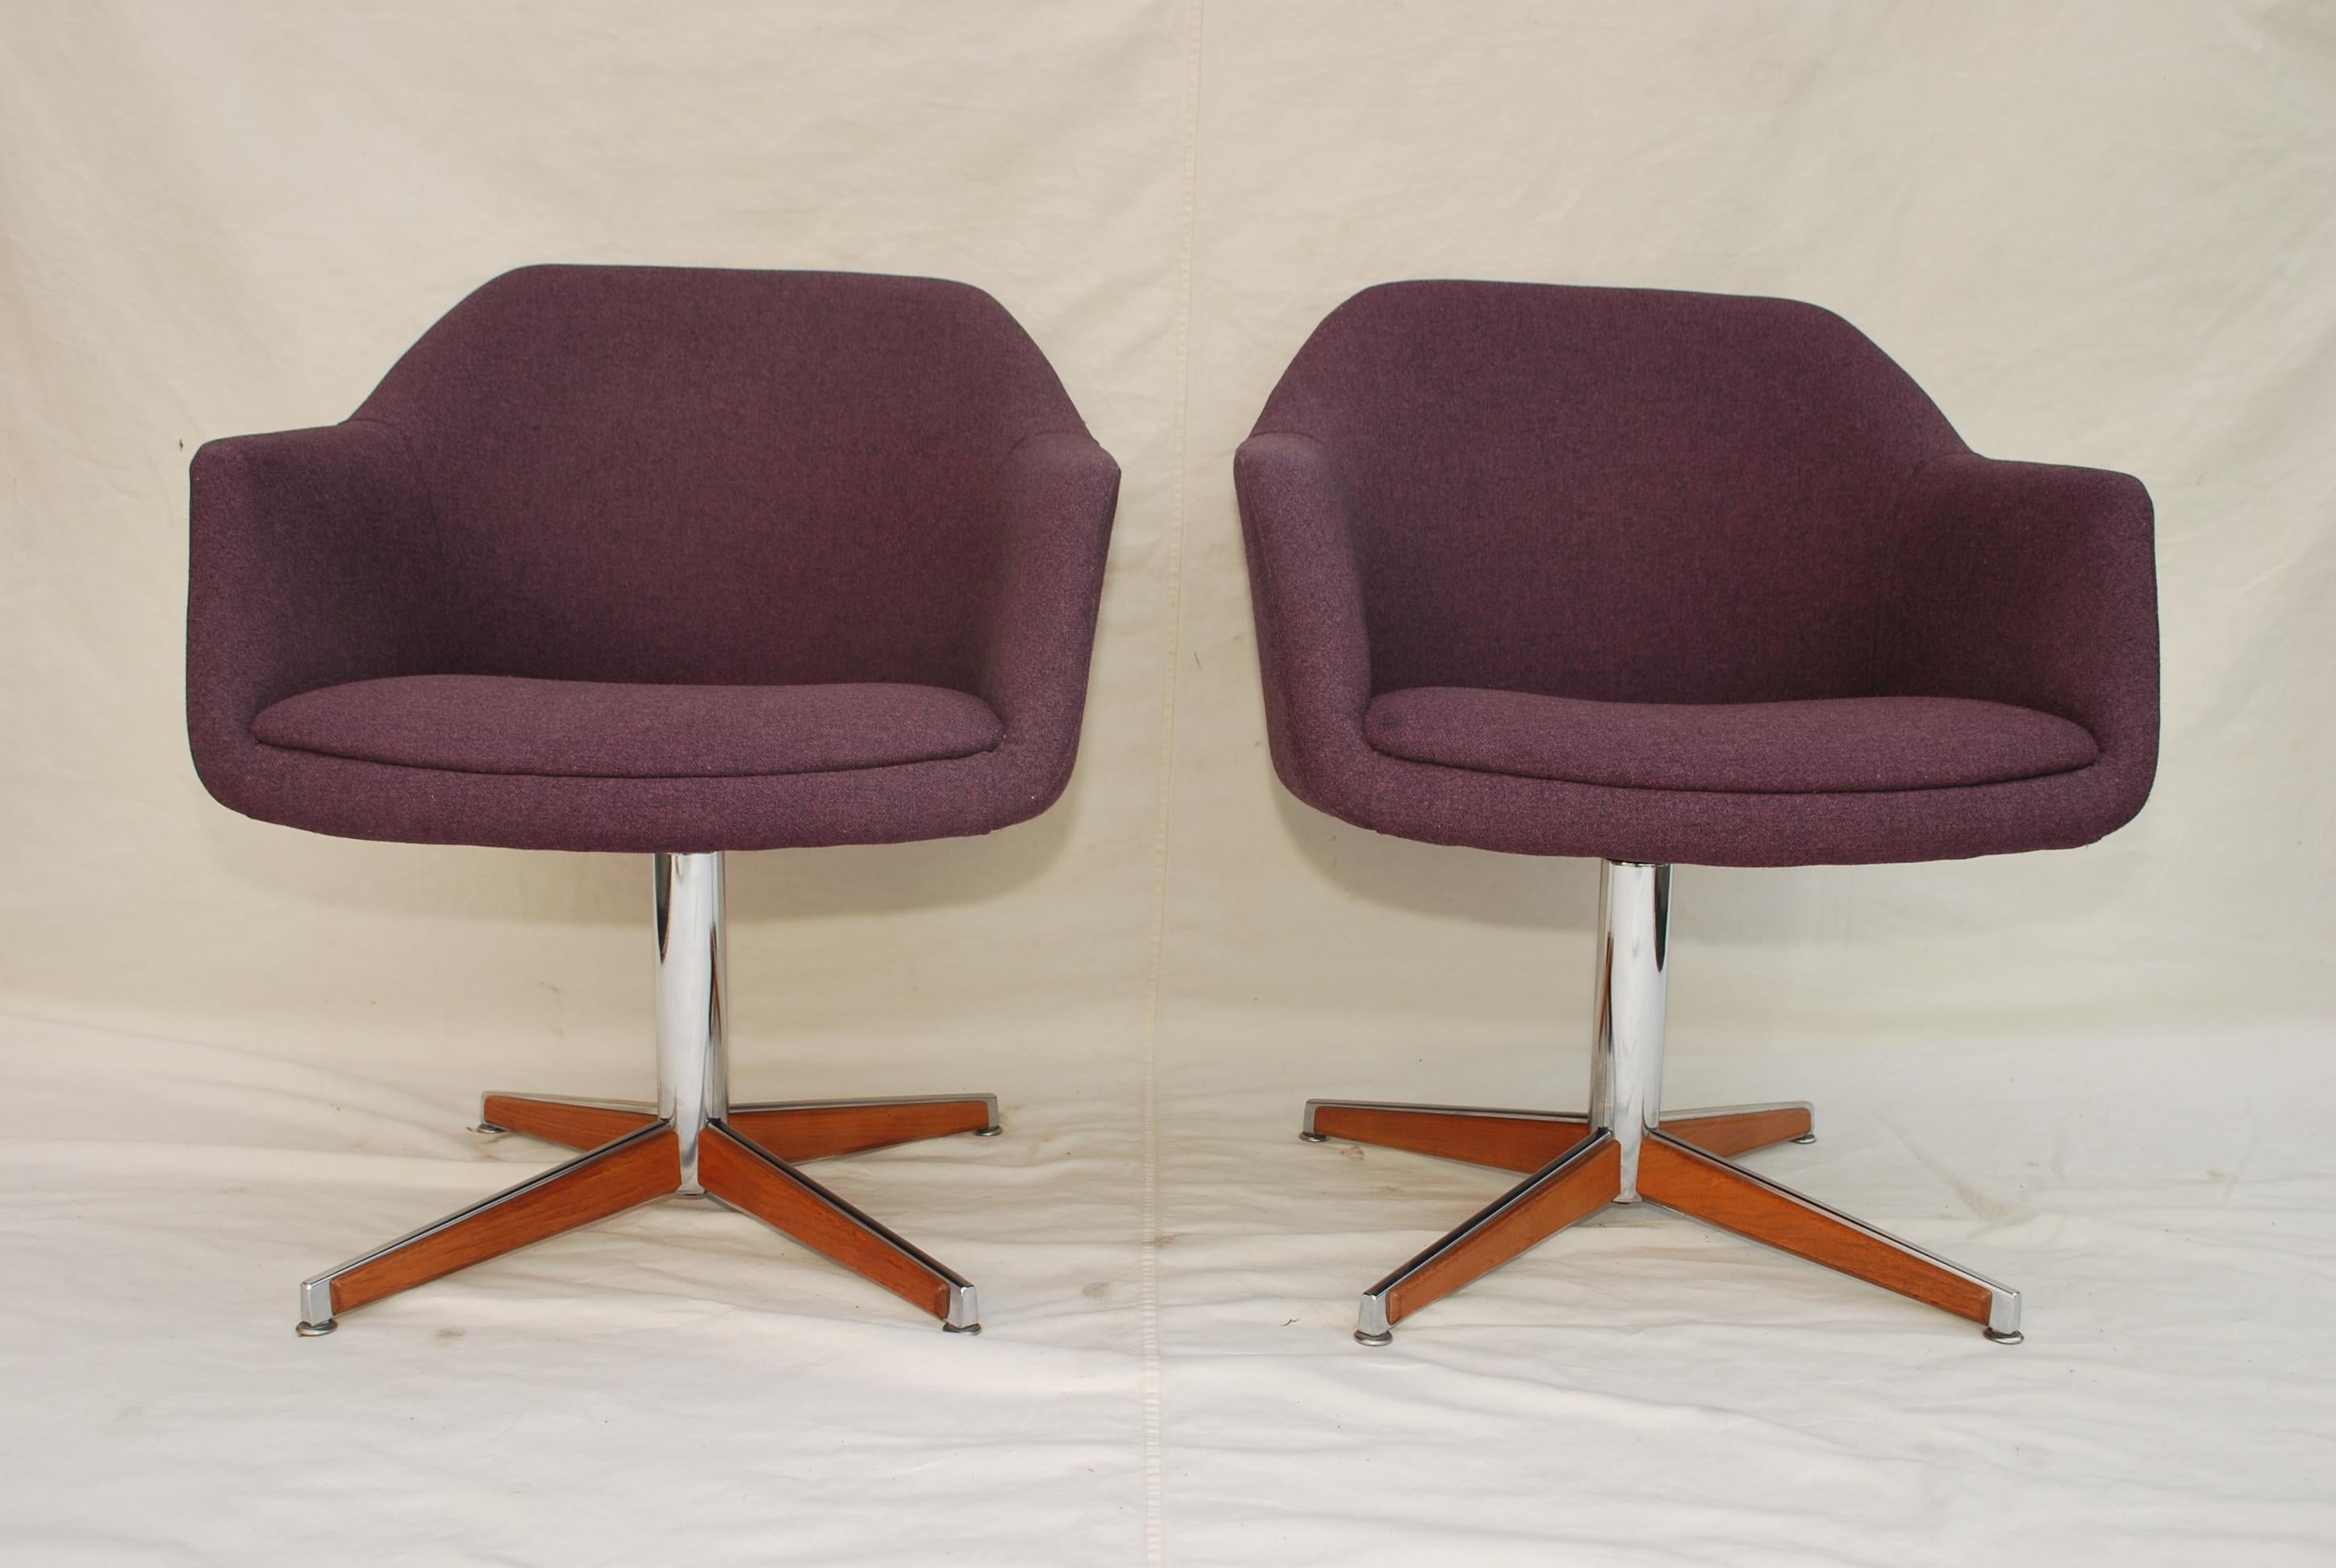 Une belle paire de chaises des années 1960 du Danemark, la marque noire sur le tissu n'est plus là, c'était juste de l'eau, j'adore ces chaises, il est assez inhabituel d'avoir du bois sur du chrome